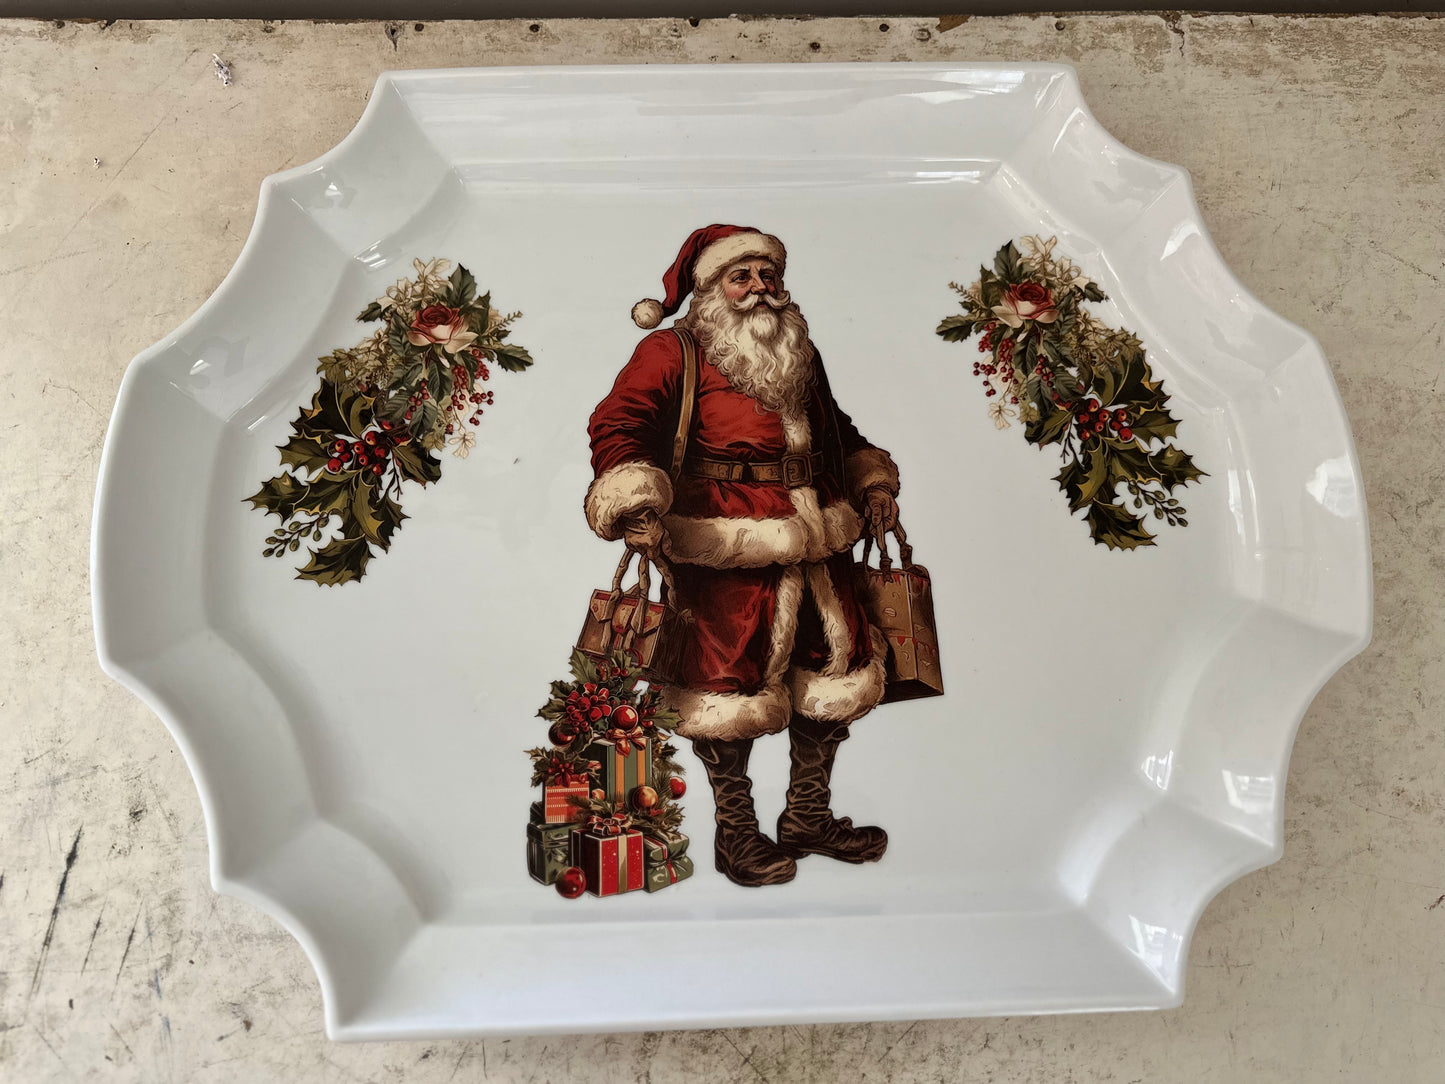 White Ceramic Santa Christmas Platter - For Decor